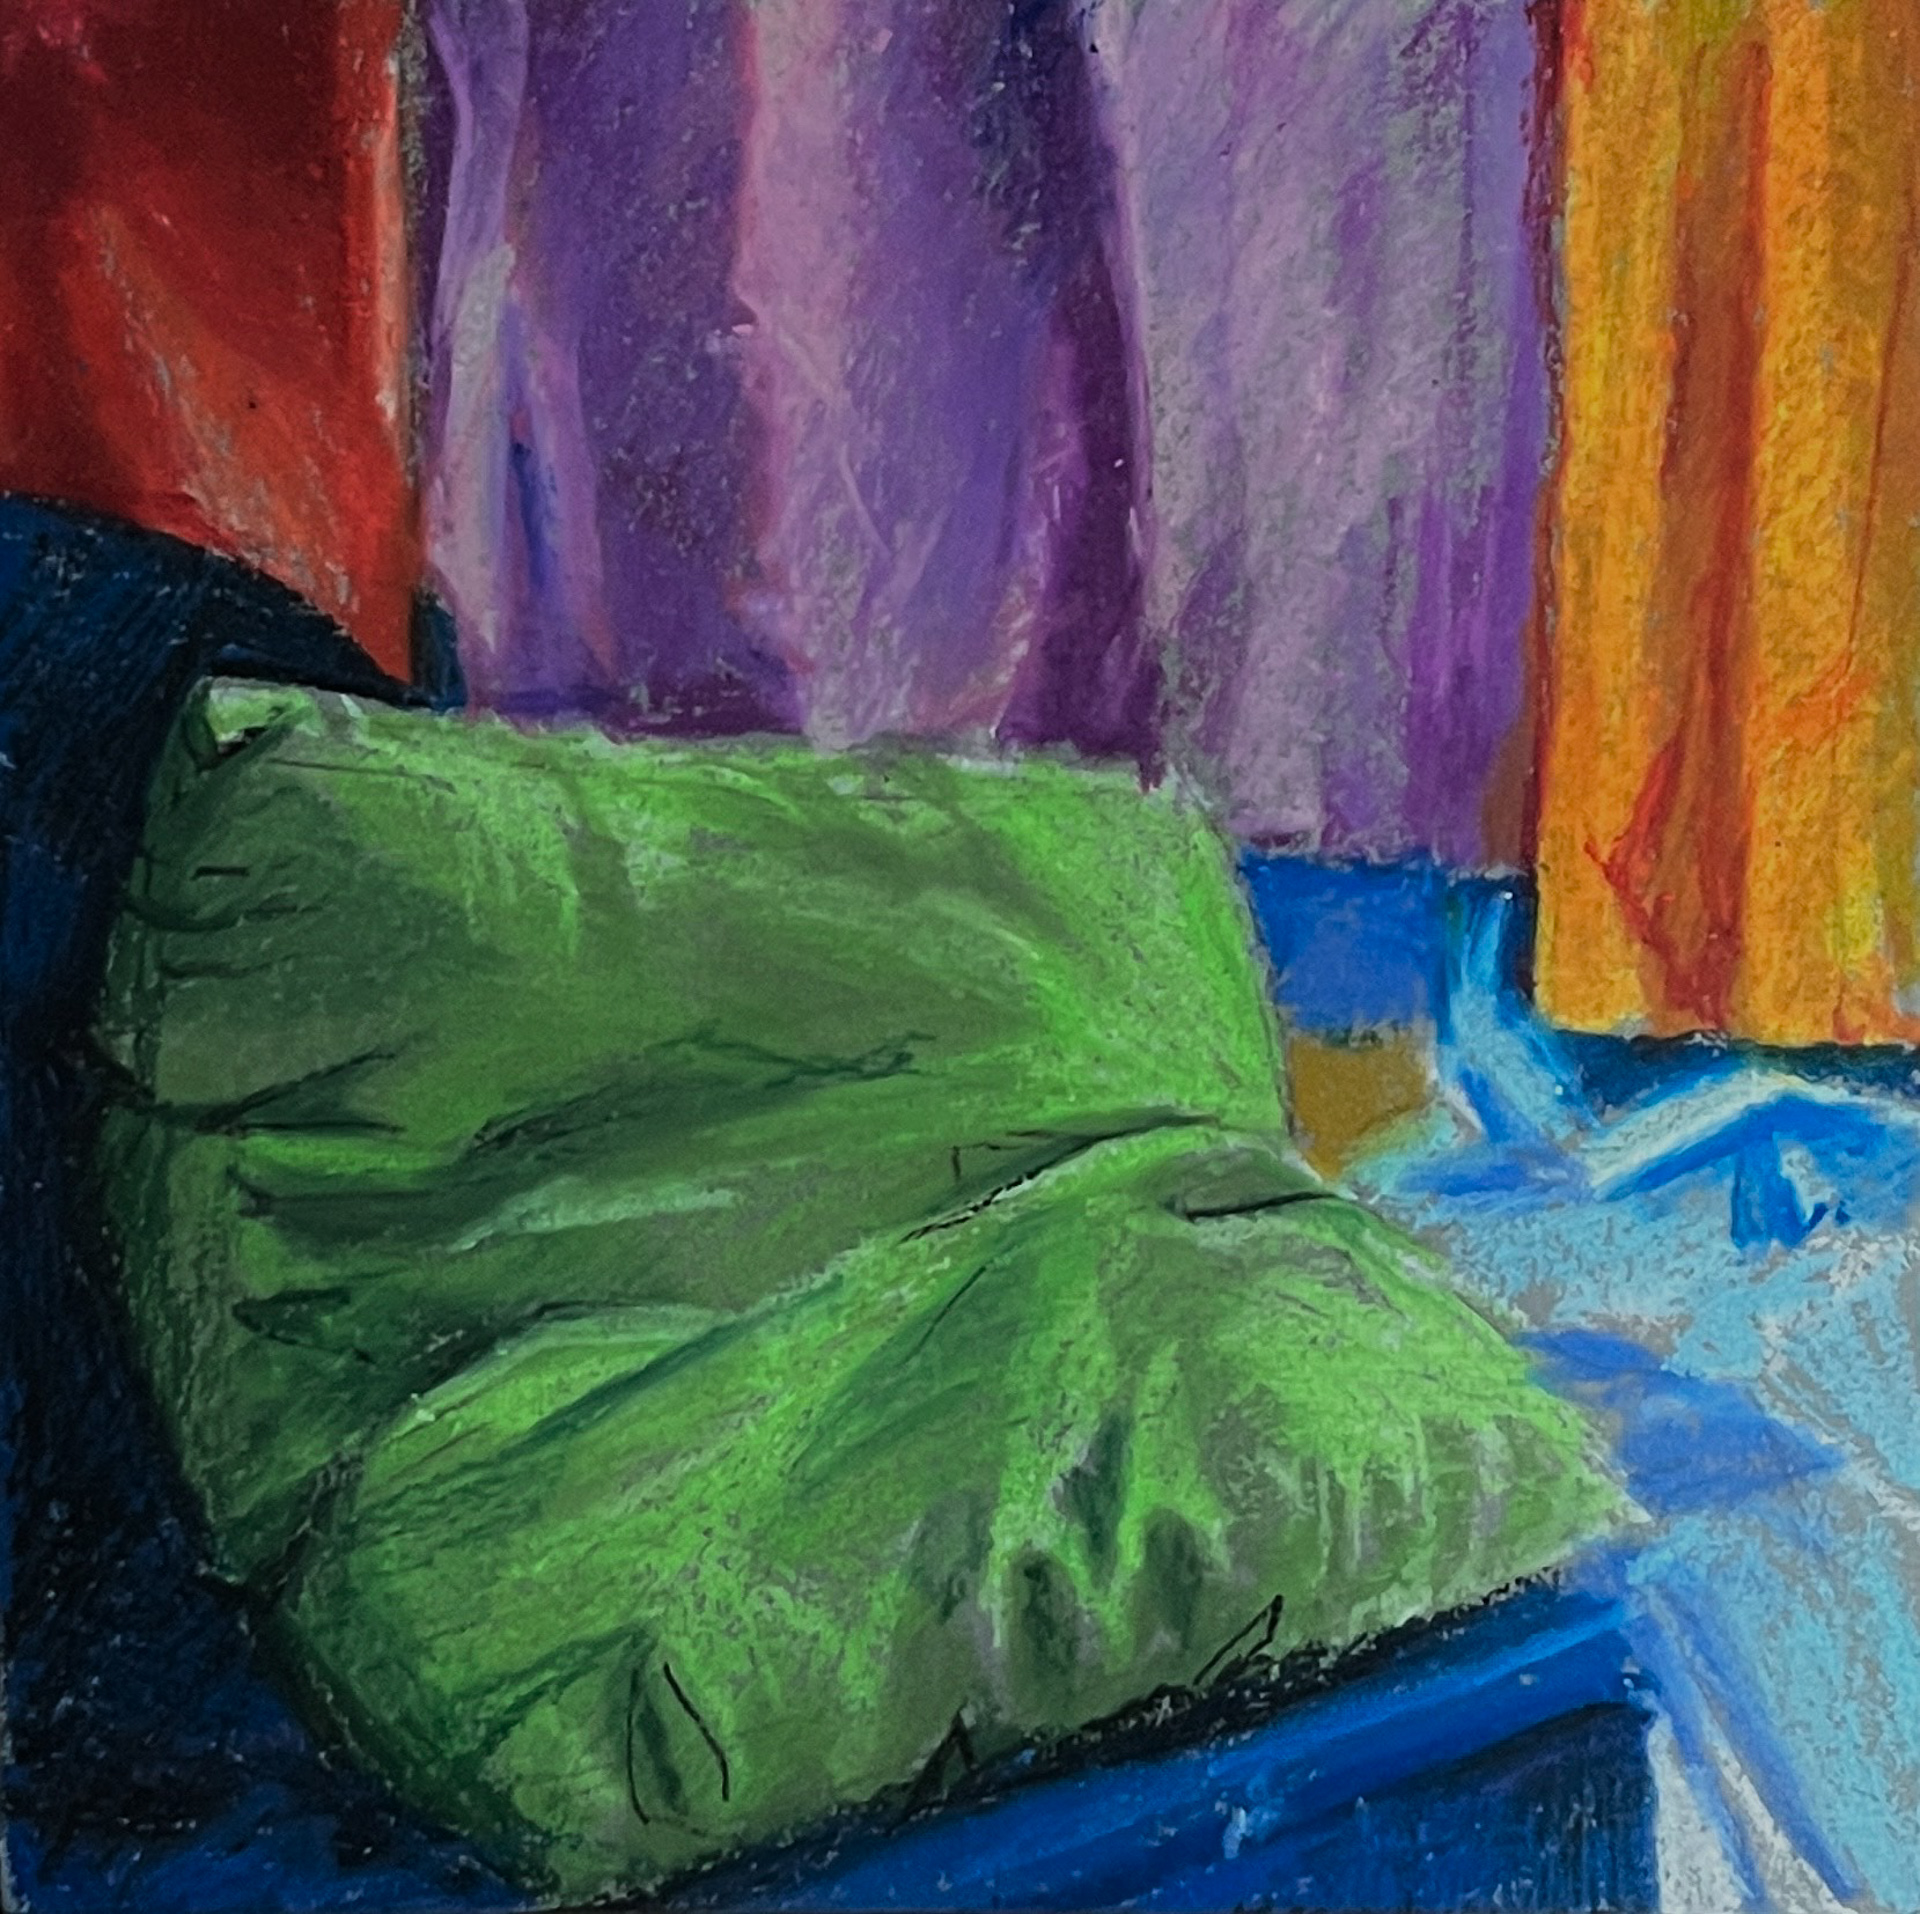 Małoformatowa praca na papierze wykonana pastelami przedstawiająca barwną martwą naturę z zieloną poduszką na pierwszym planie po lewej stronie kompozycji.